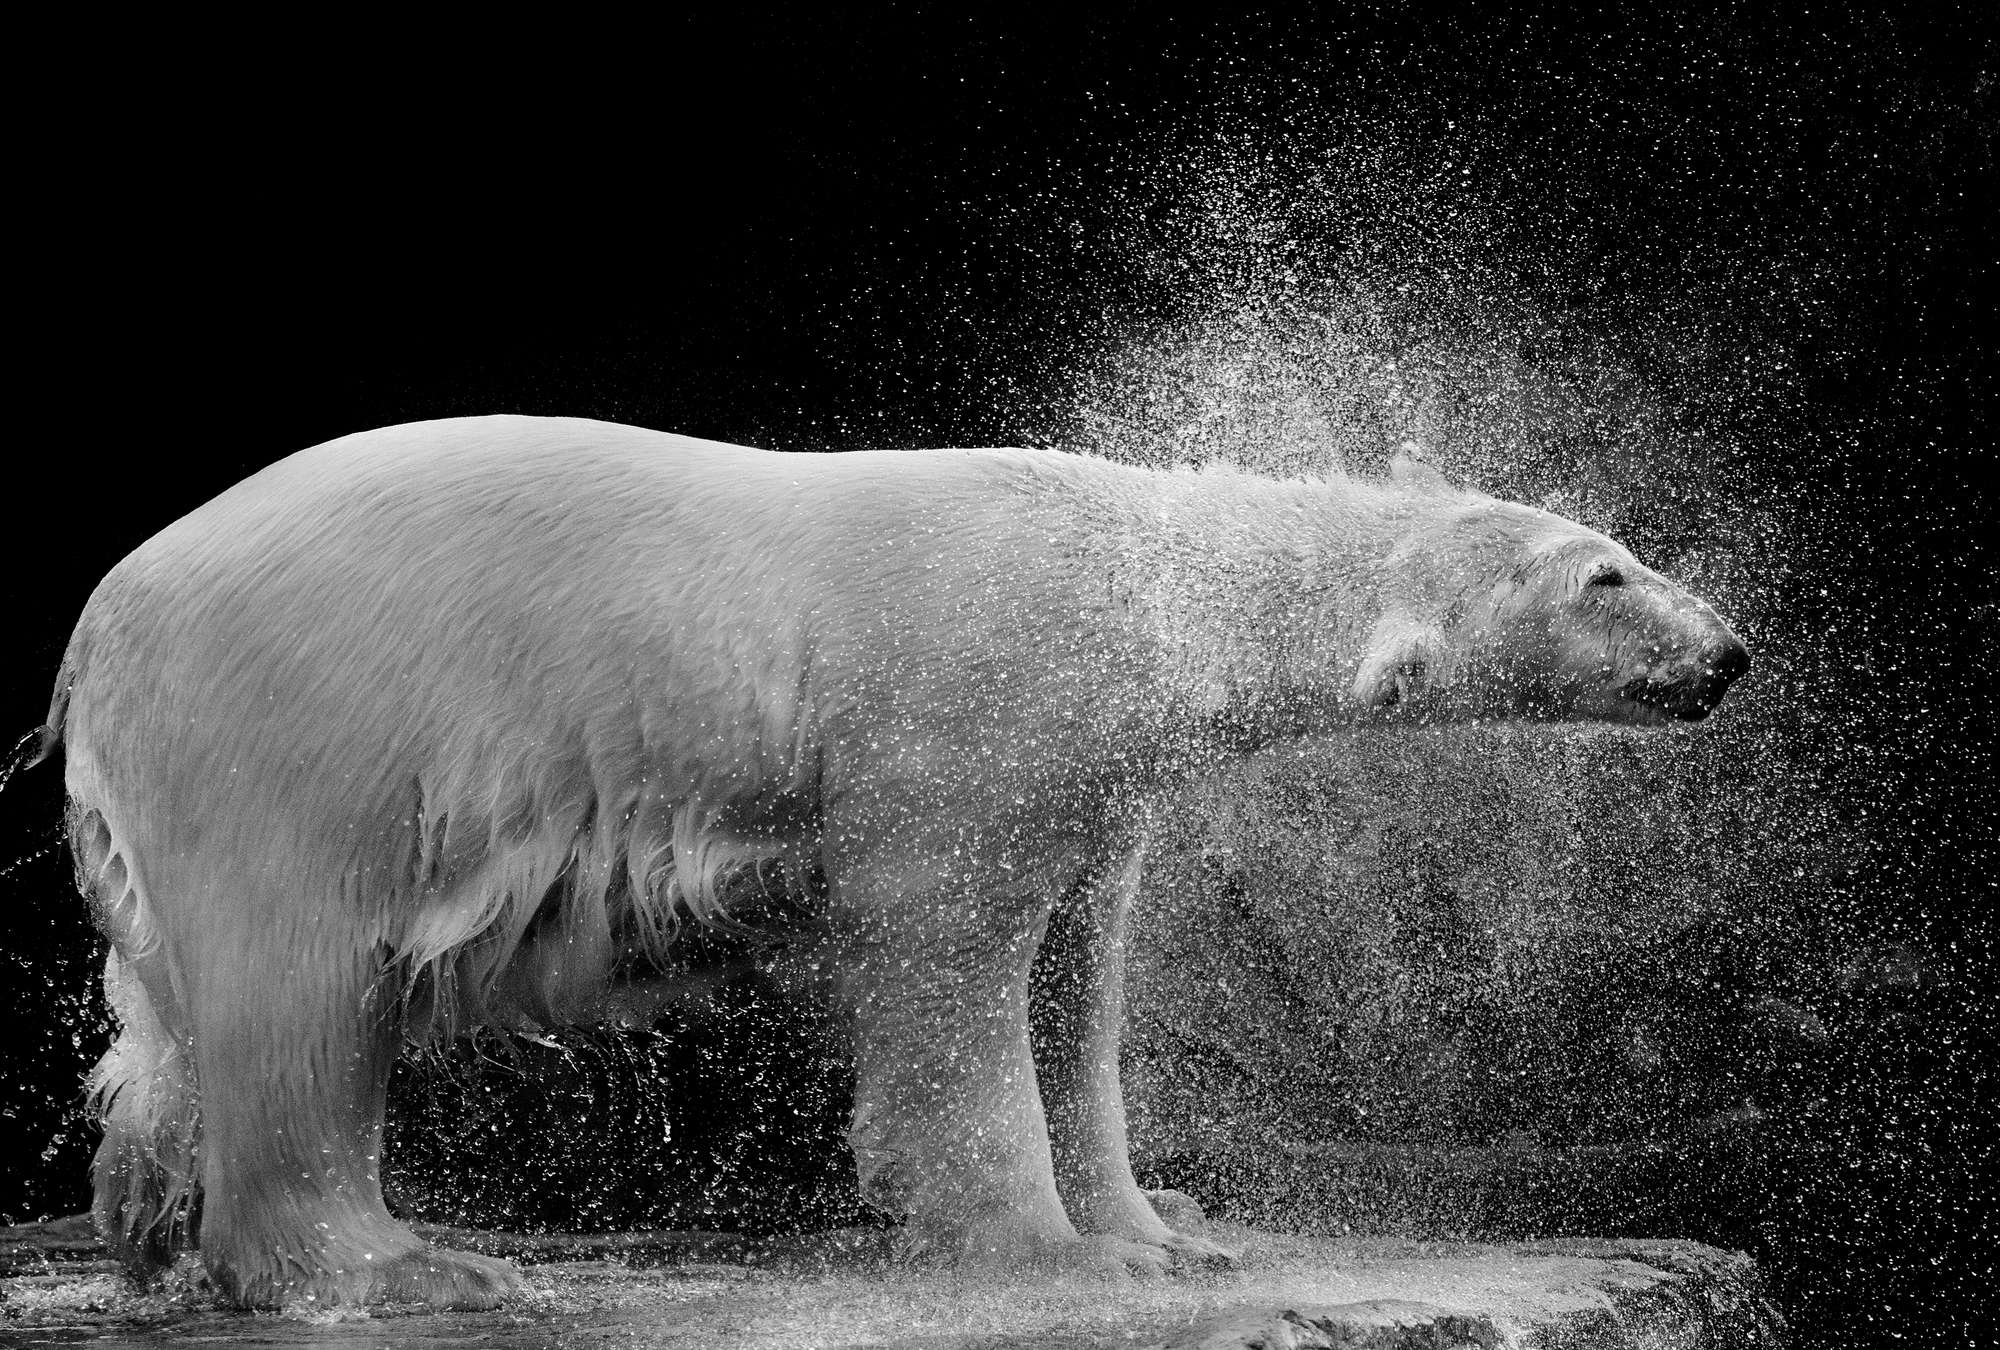             Photo wallpaper wet polar bear against black background
        